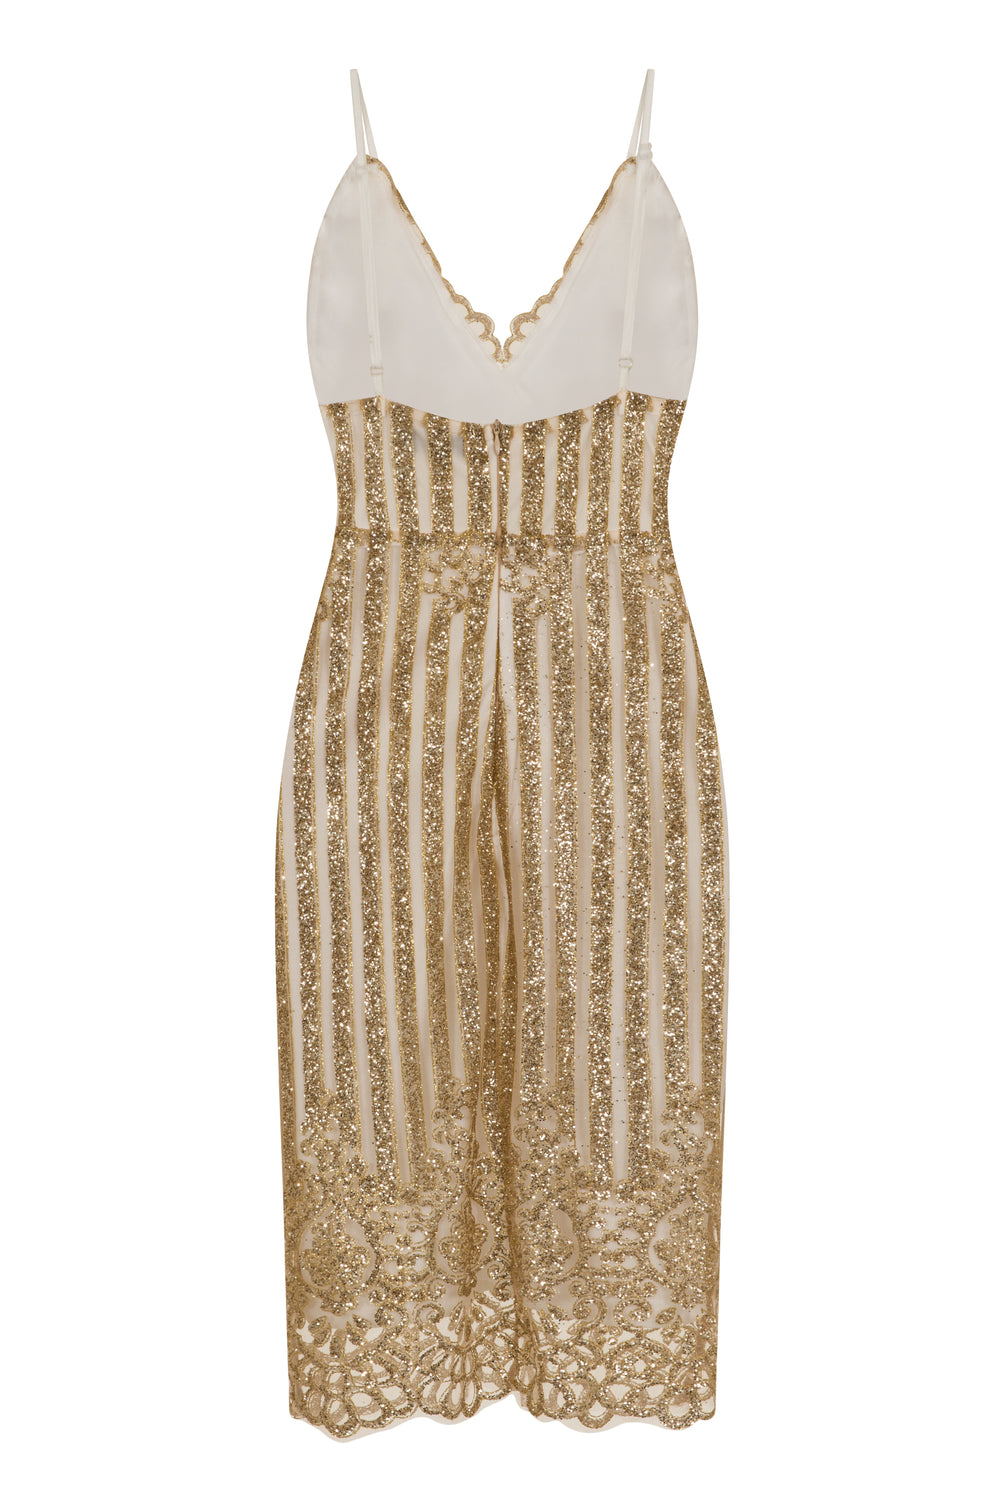 Kimberley Sparkle Glitter White & Gold Victorian Midi Dress